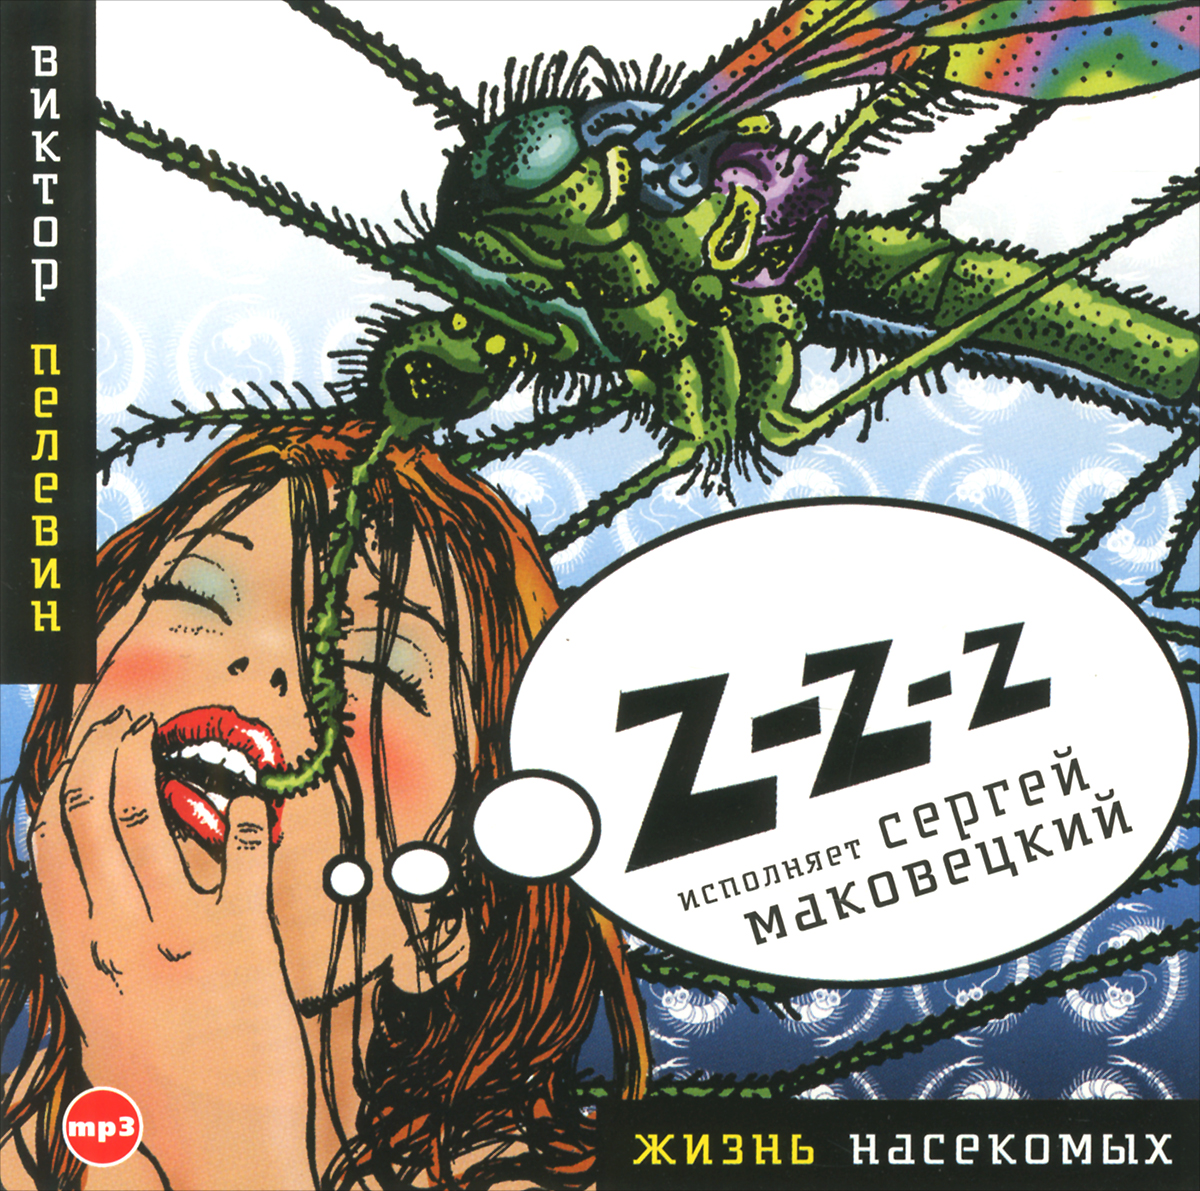 Жизнь насекомых (аудиокнига mp3)